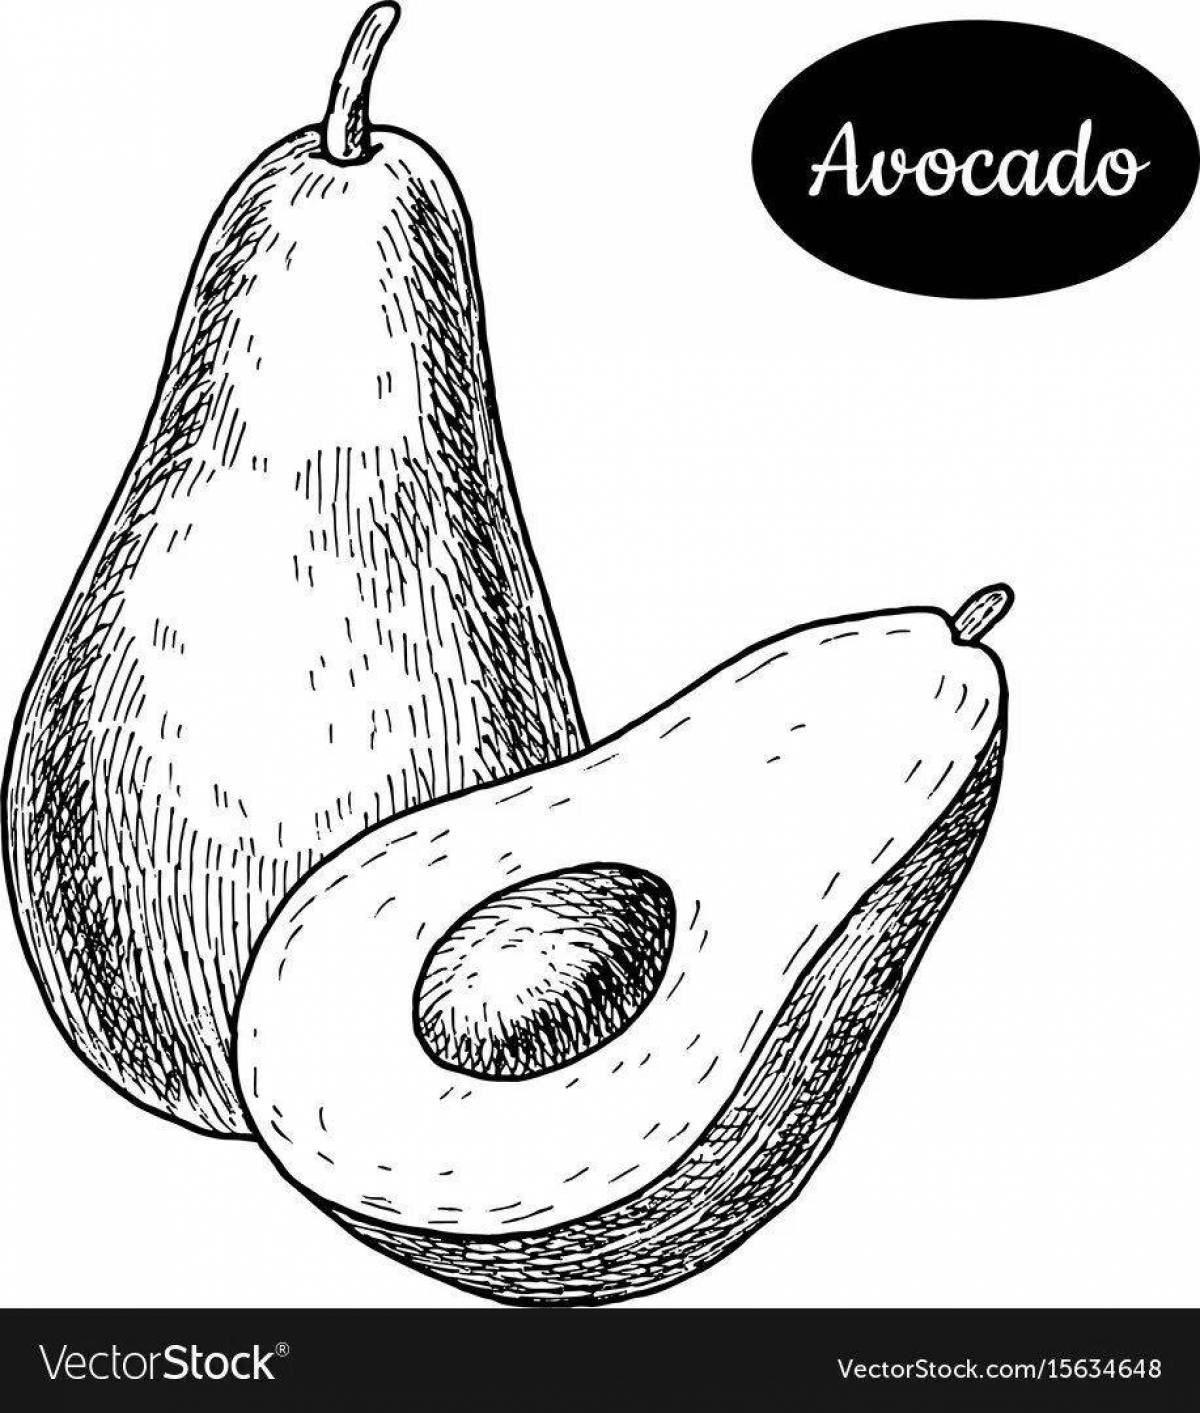 Игривый рисунок авокадо